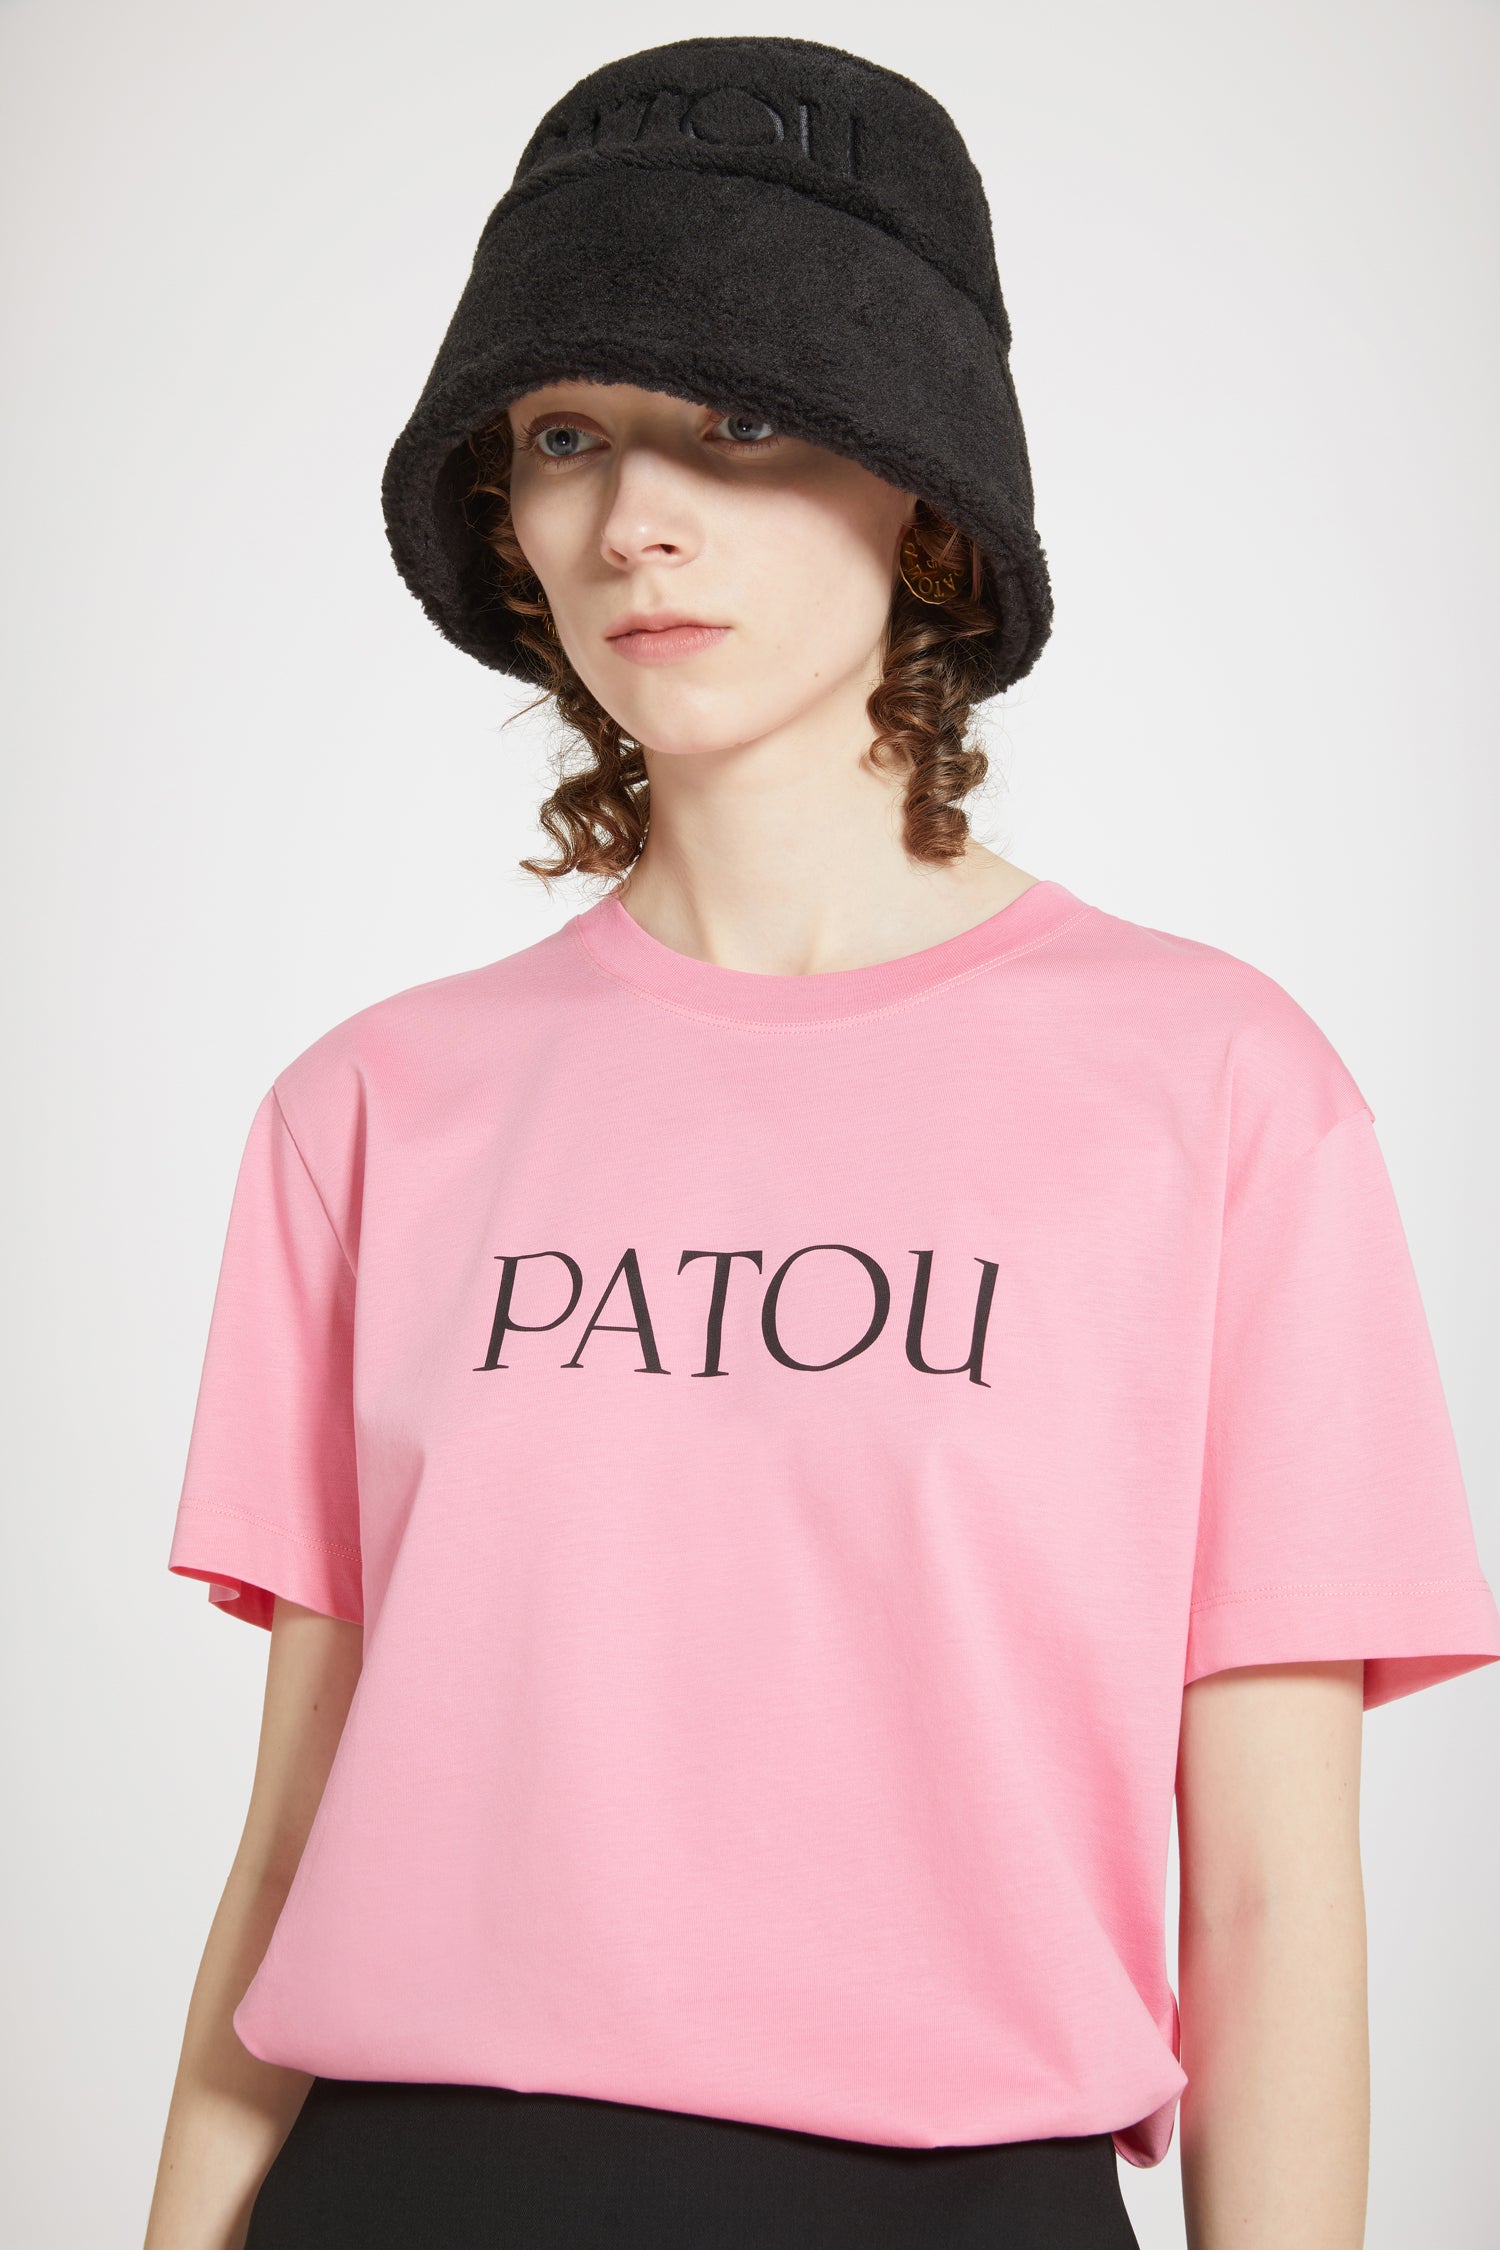 新品未着用 ピンクM PATOU オーガニックコットン パトゥロゴTシャツ